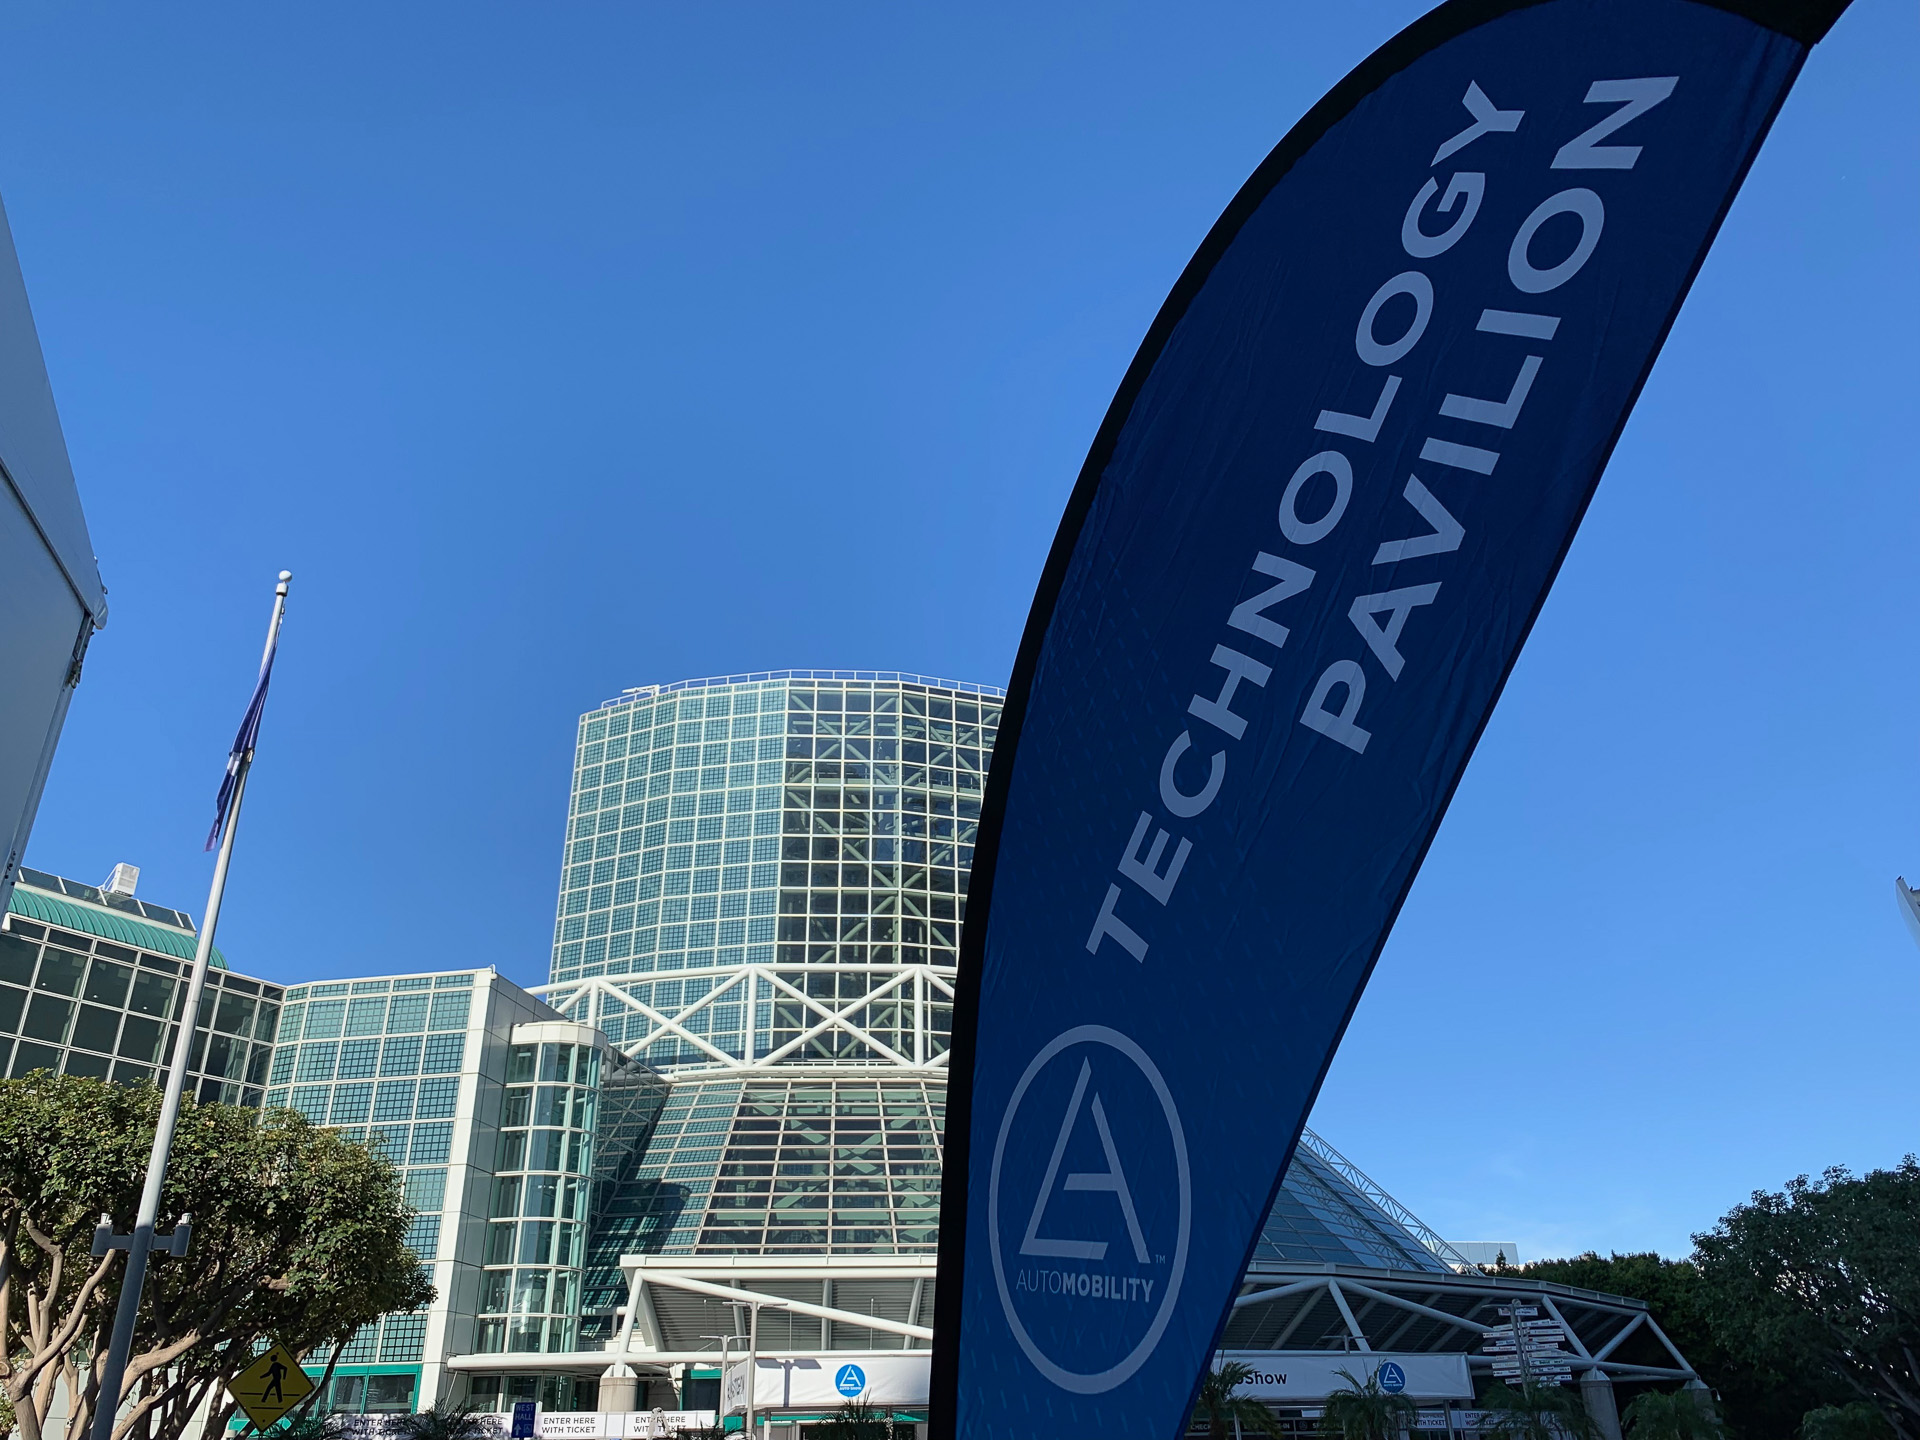 Laオートショー 2018 新型 Mazda3 や プリウス 2019モデルなどまもなく公開 開催準備が進む Laコンベンションセンター